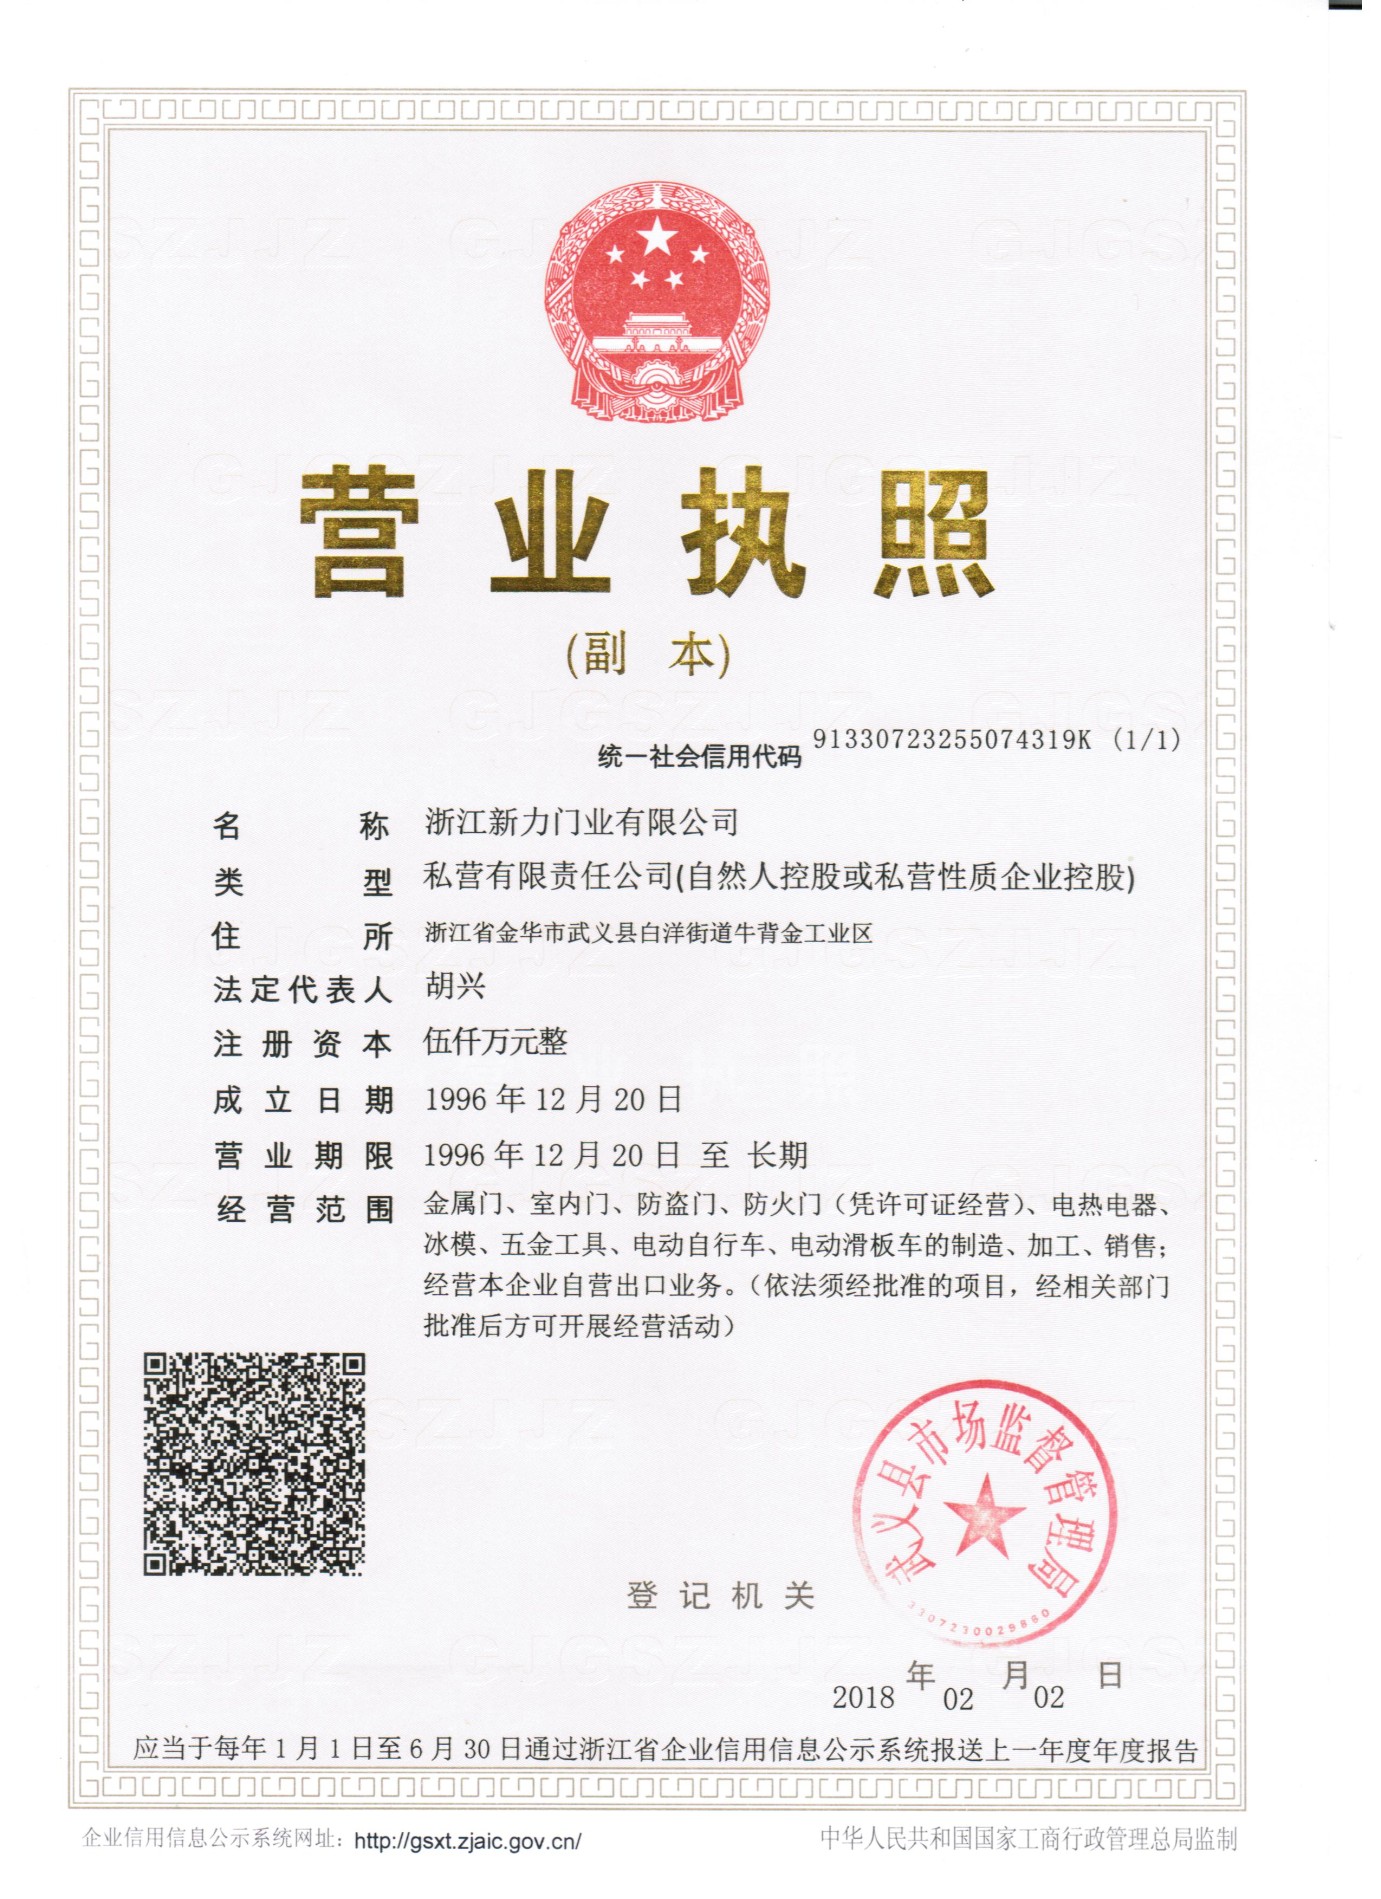 Licença de Negócios do Grupo Xinli